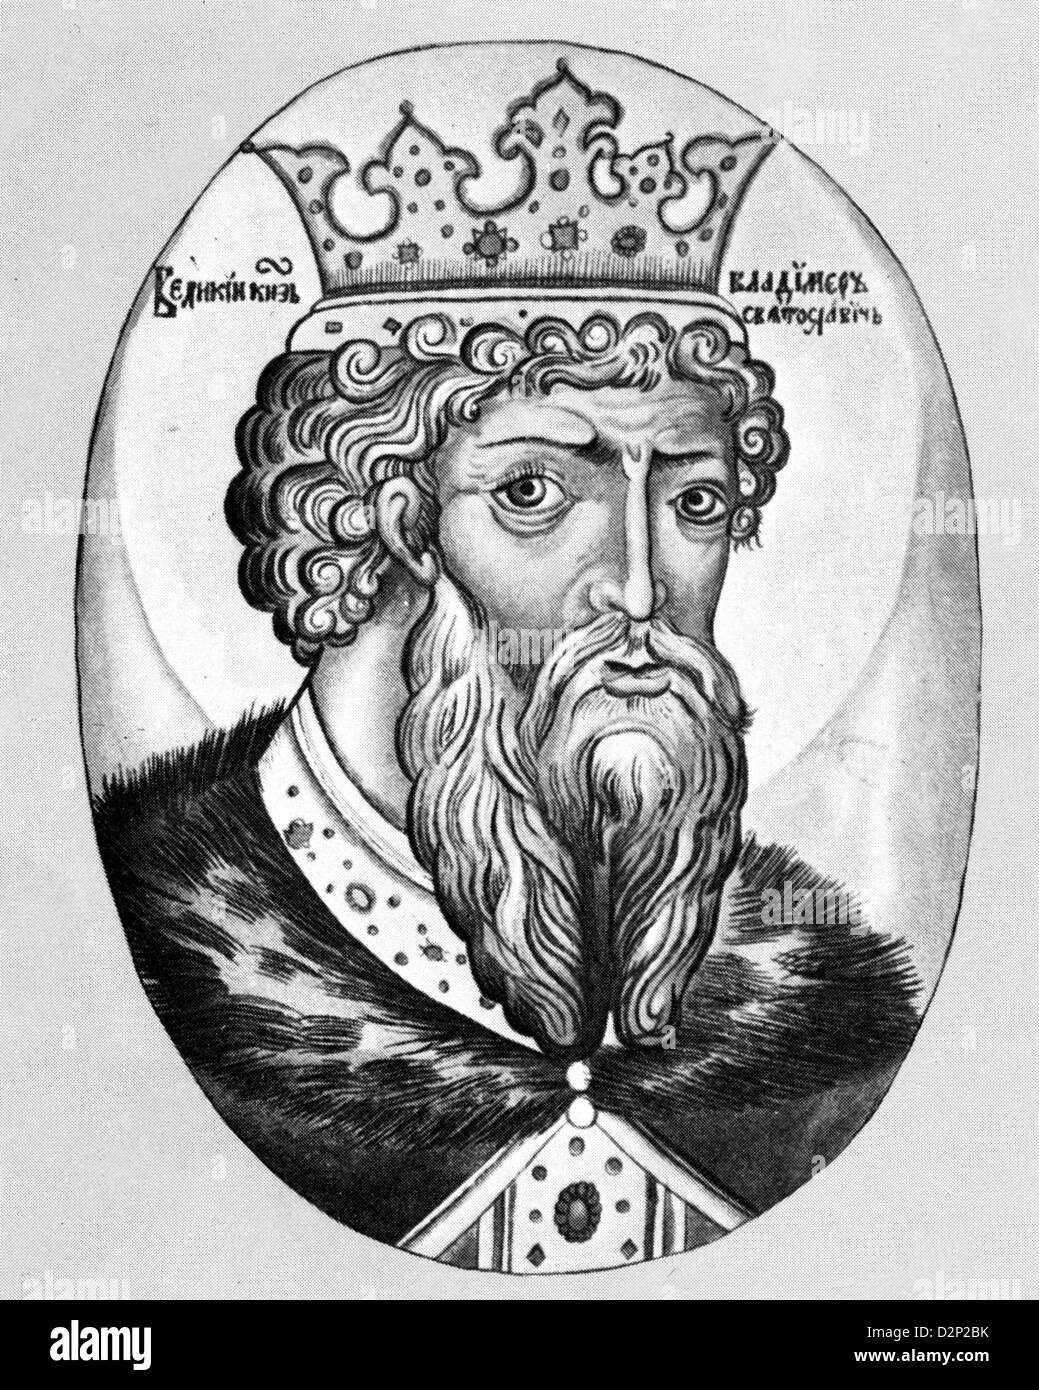 ST. VLADIMIR LE GRAND (958-1015) c Grand Prince de Kiev, dans une illustration du 17ème siècle Banque D'Images